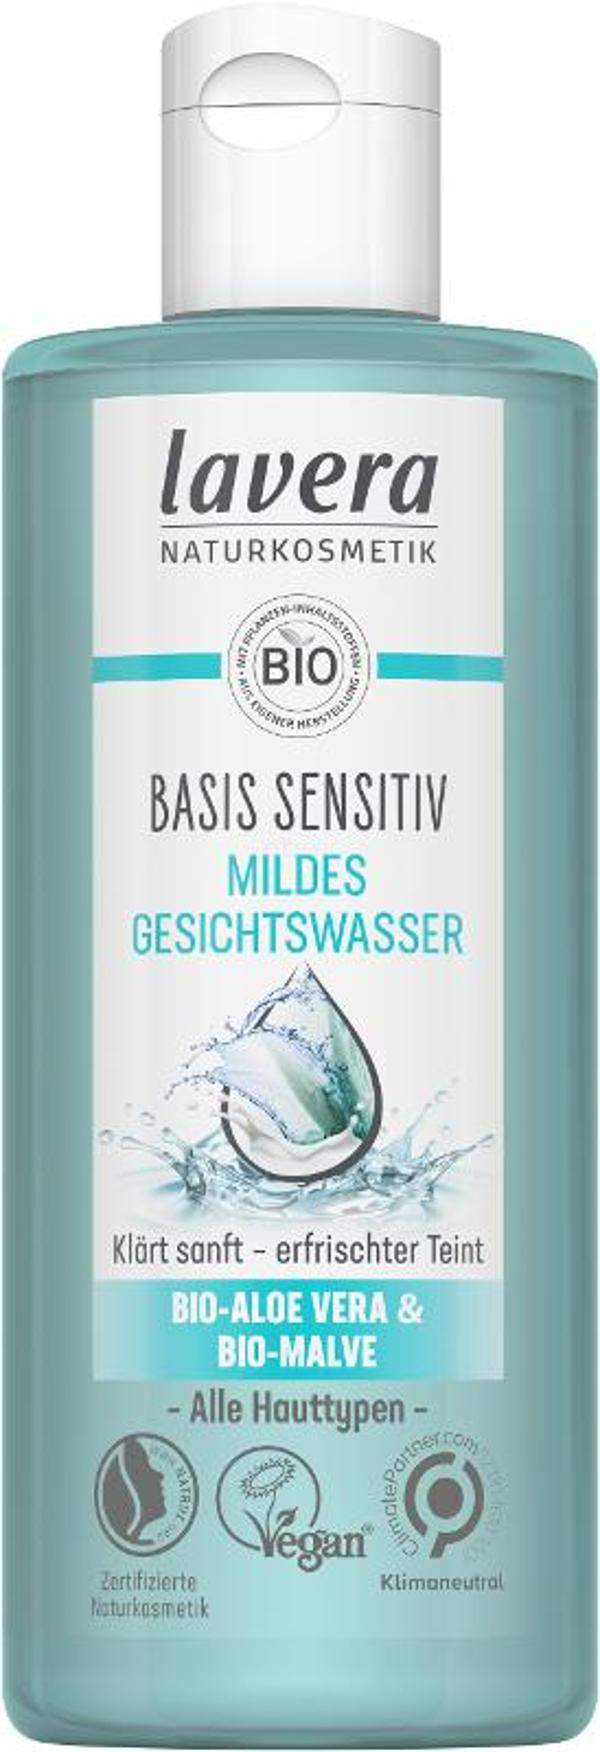 Produktfoto zu Basis Sensitiv mildes Gesichtswasser, 200 ml